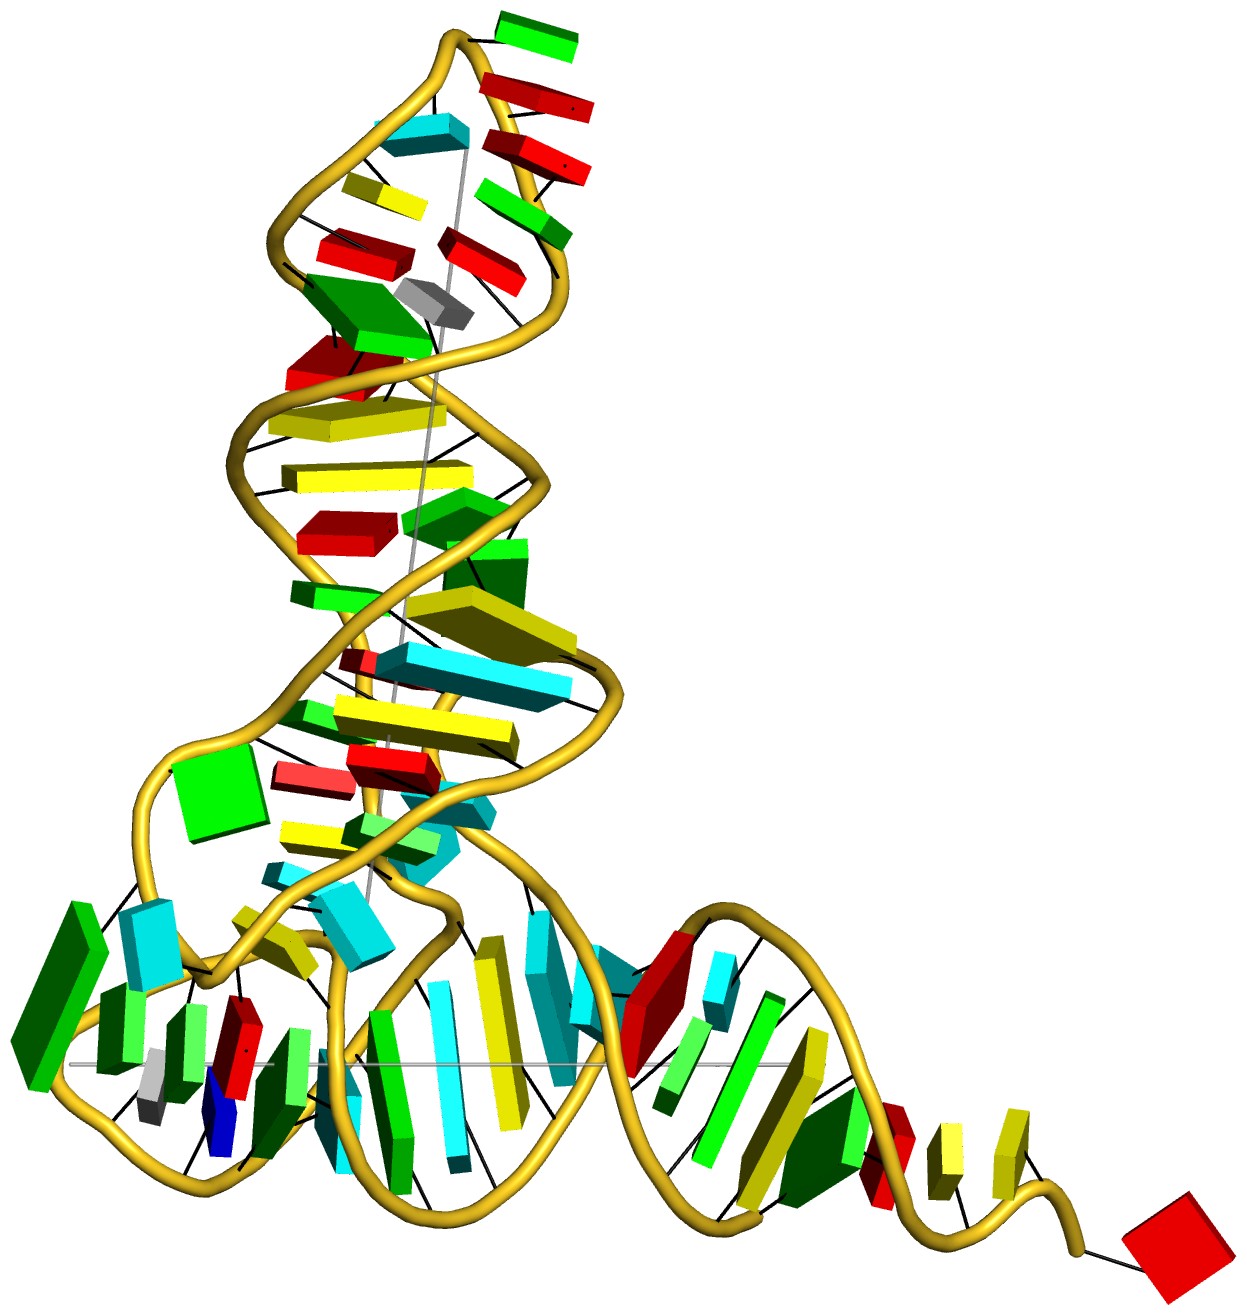 Молекула рнк построена. Молекула РНК. РНК PNG. Эмблема ДНК Эволюция без фона. РНК из пластилина.